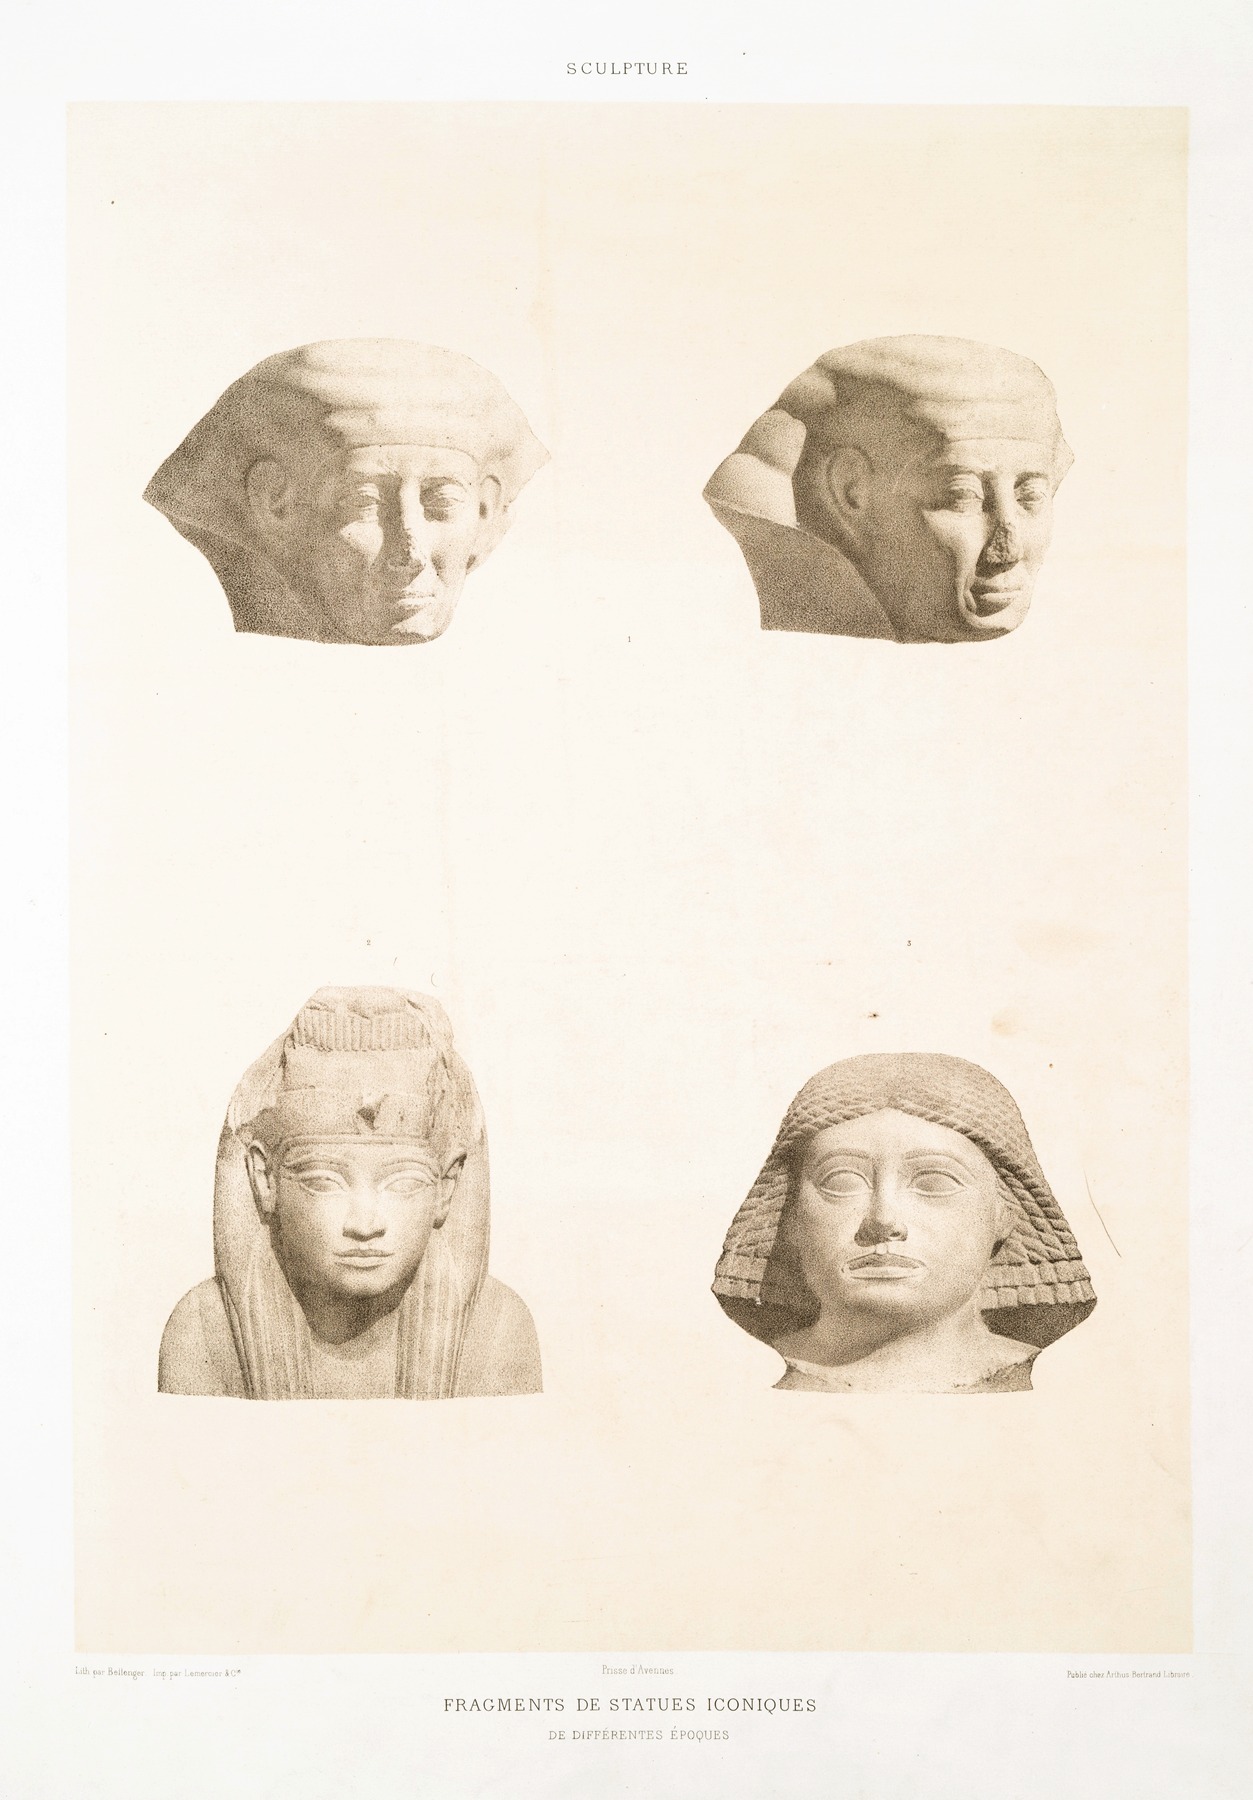 Émile Prisse d'Avennes - Sculpture; fragments de statues iconiques de différentes époques